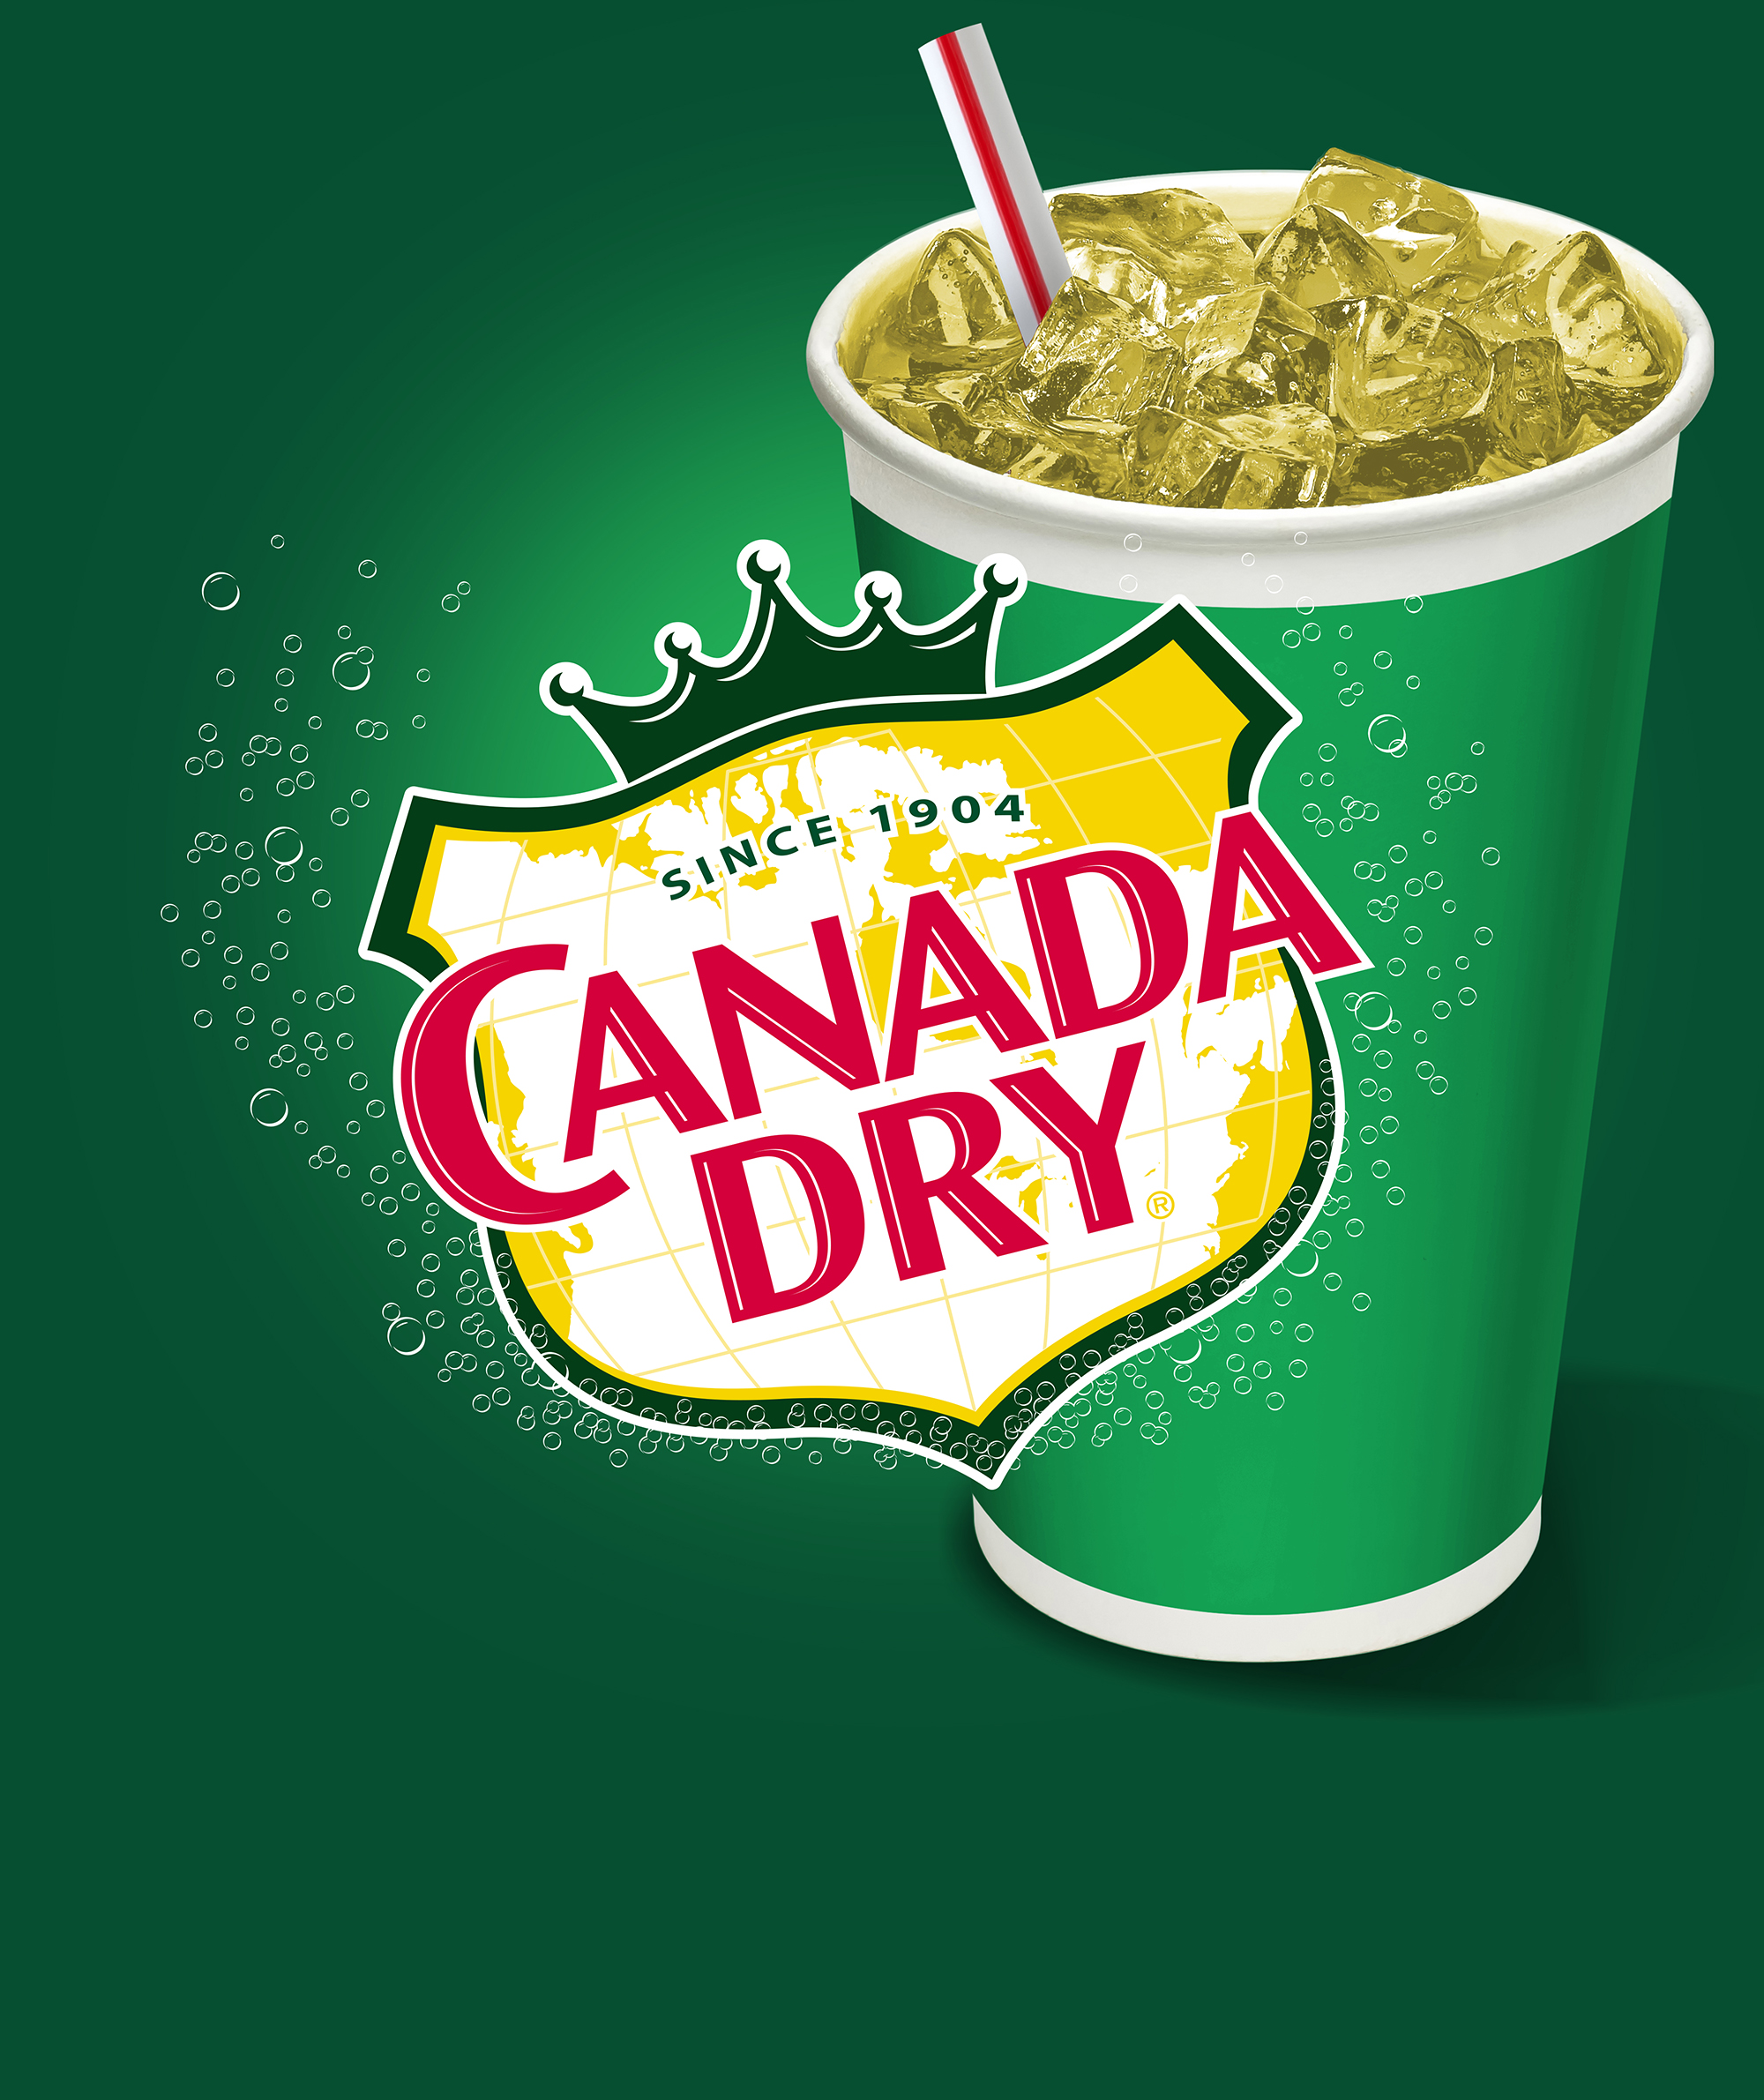 Flavor Smart Keurig Dr. Pepper Brands - Canada Dry. Real Ginger. Real Taste.